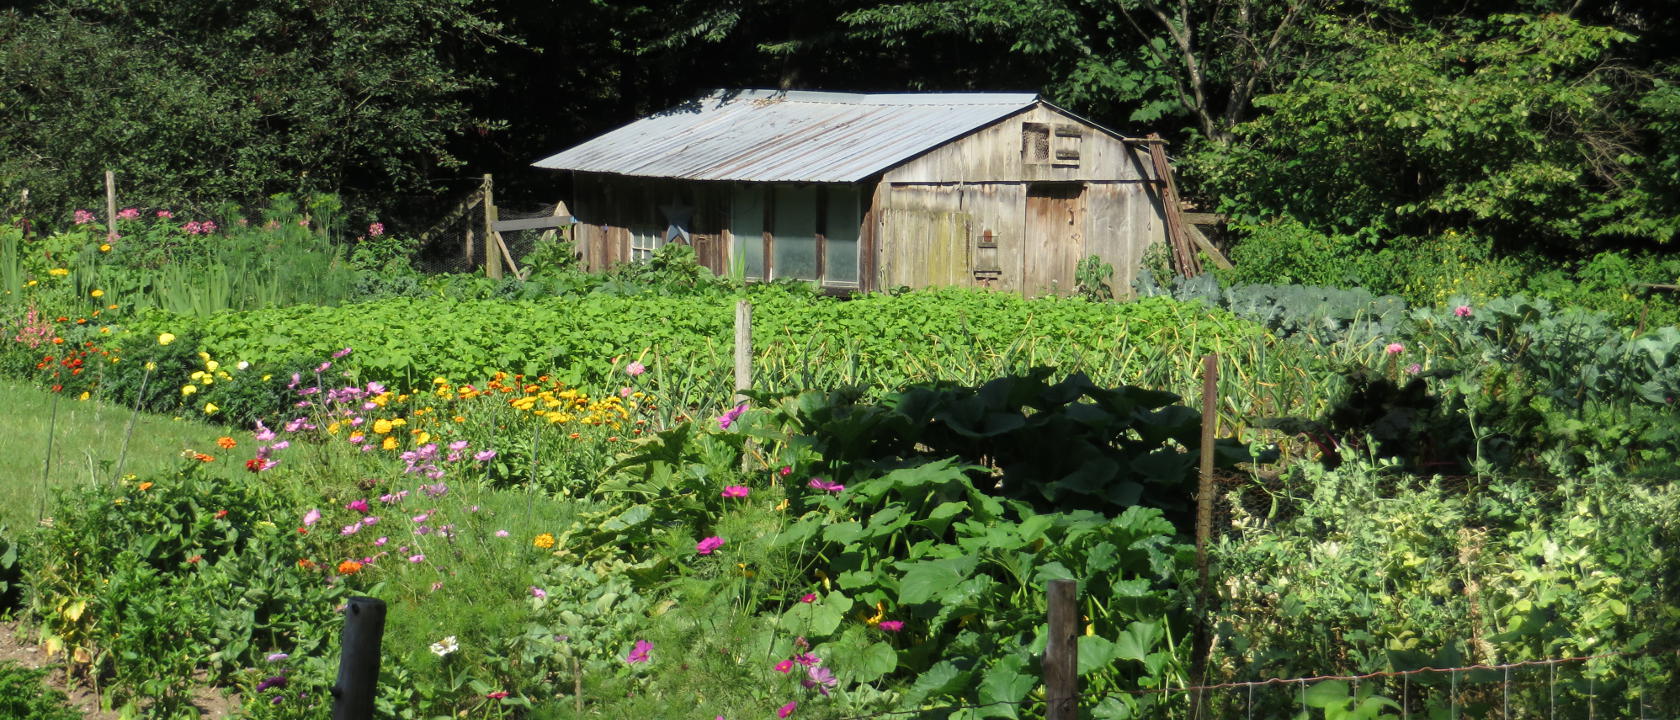 Uphill Farm in Rochester Vermont